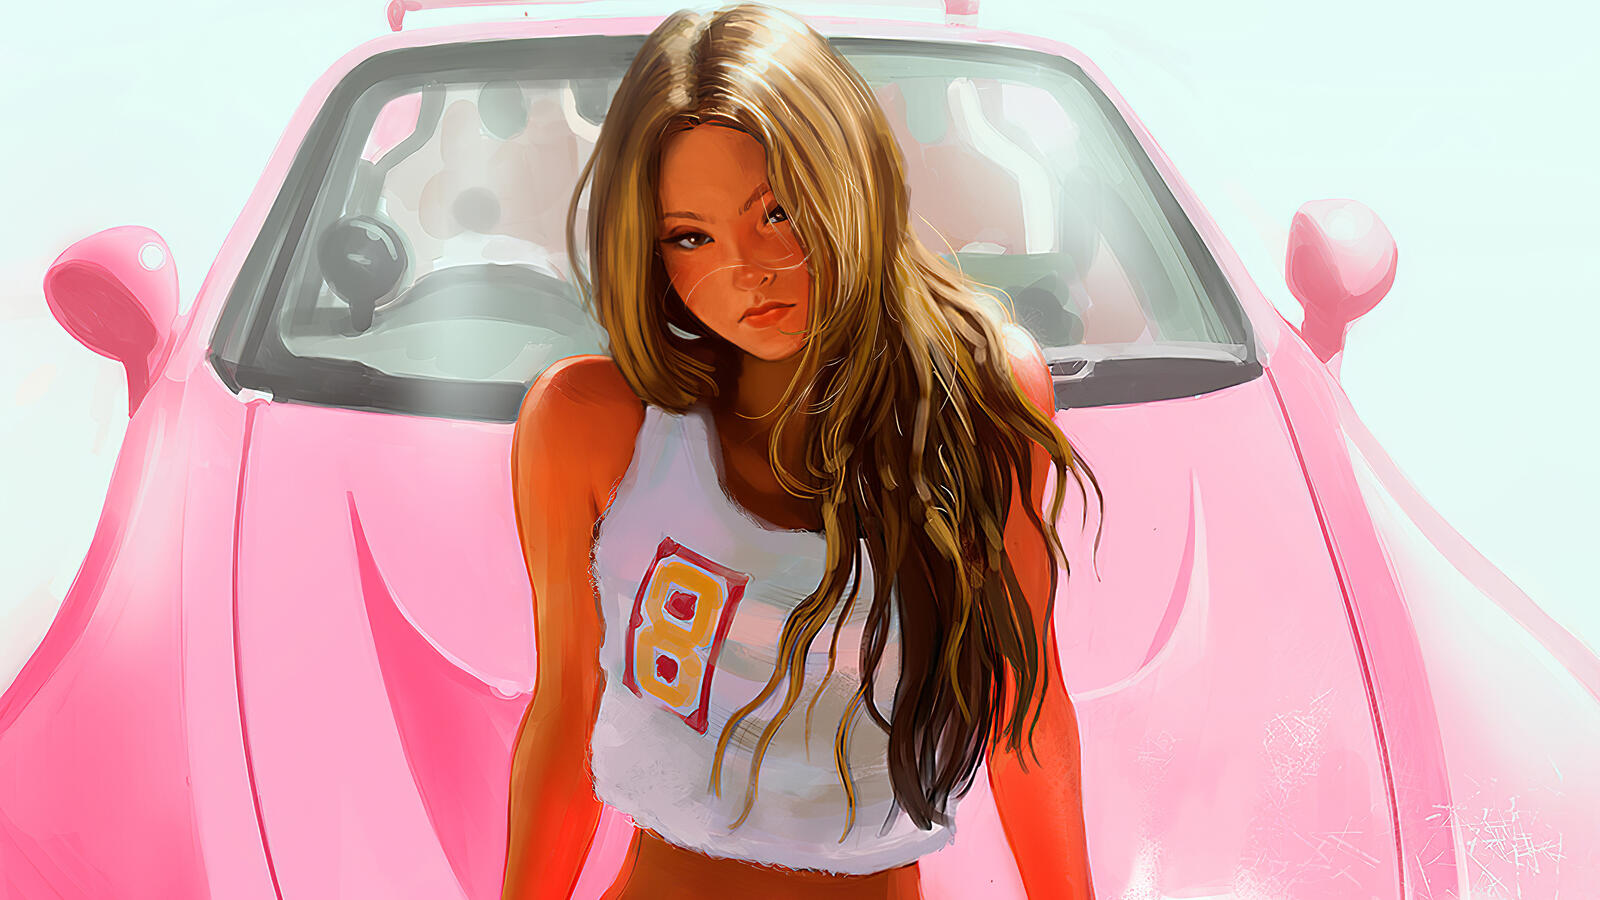 免费照片德文-奥基在一辆粉红色汽车前画了一幅来自余热的女孩的图画